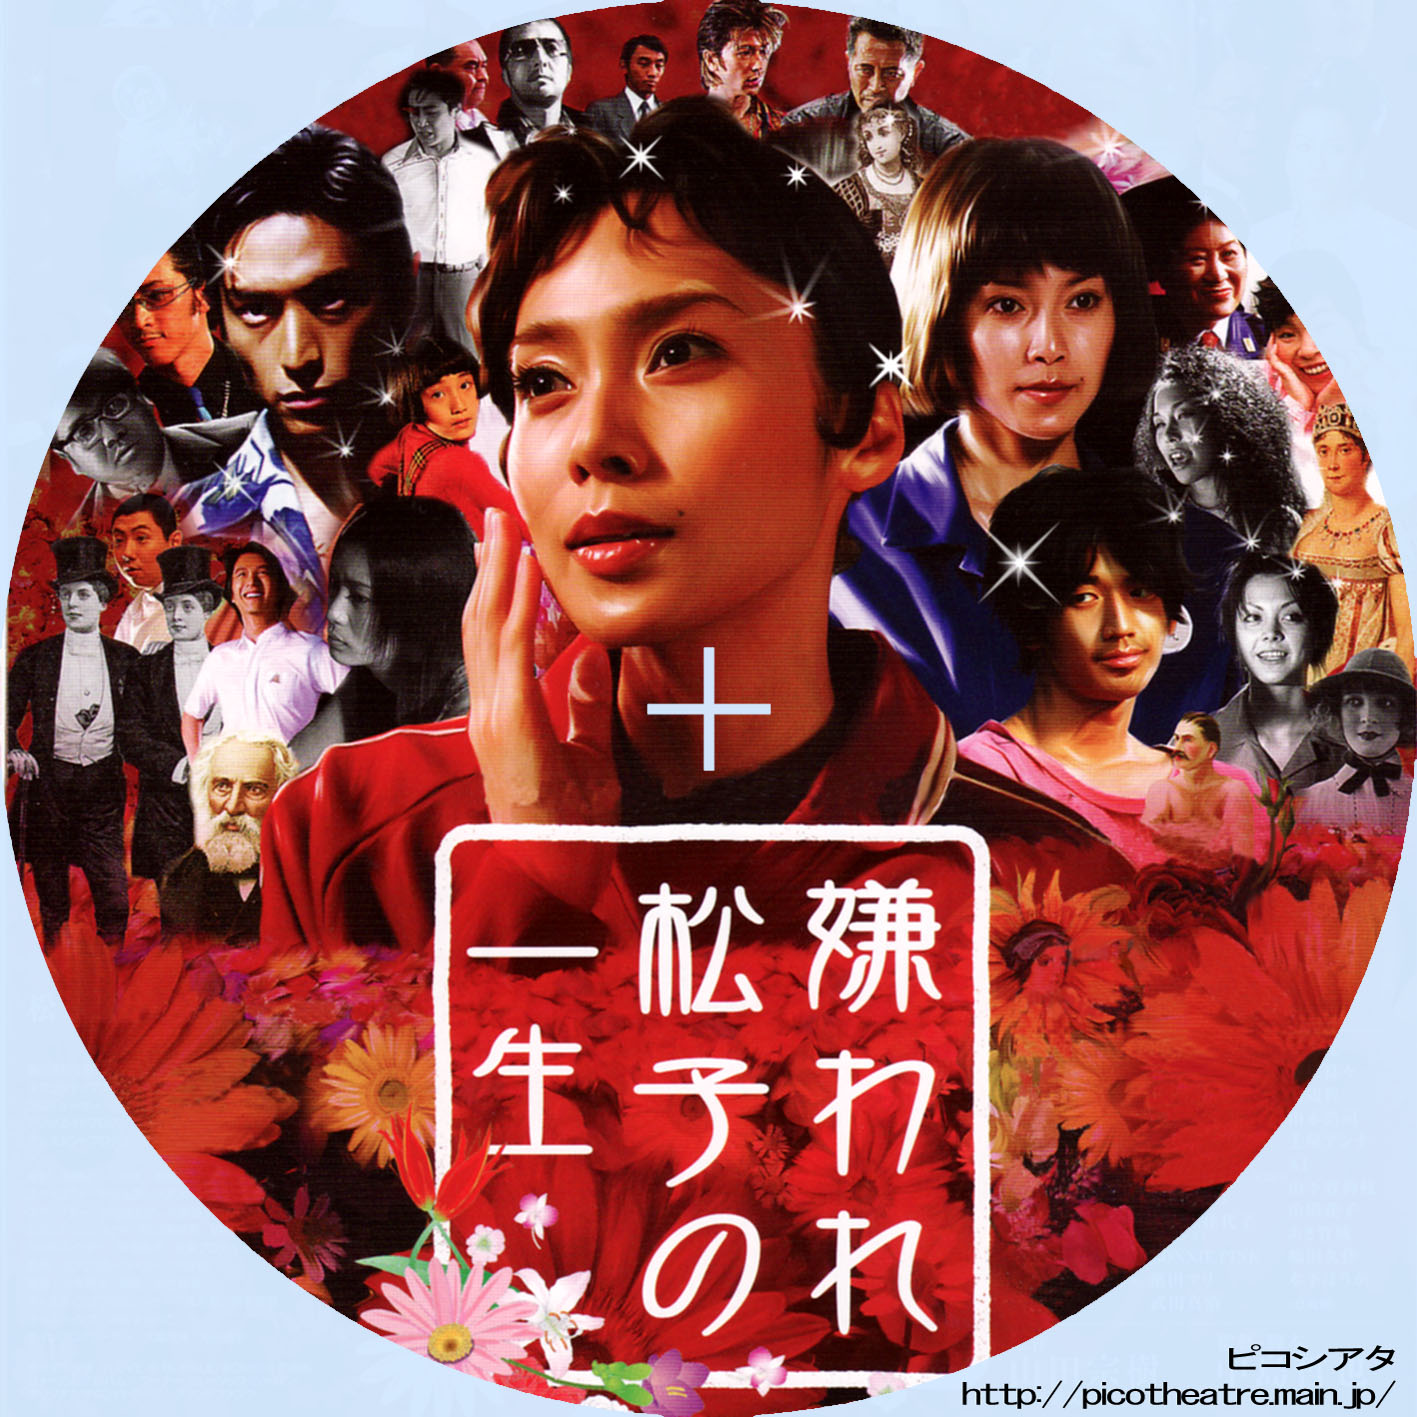 嫌われ松子の一生 dvd-box〈6枚組〉」 dvd | www.tautauchapterques.com